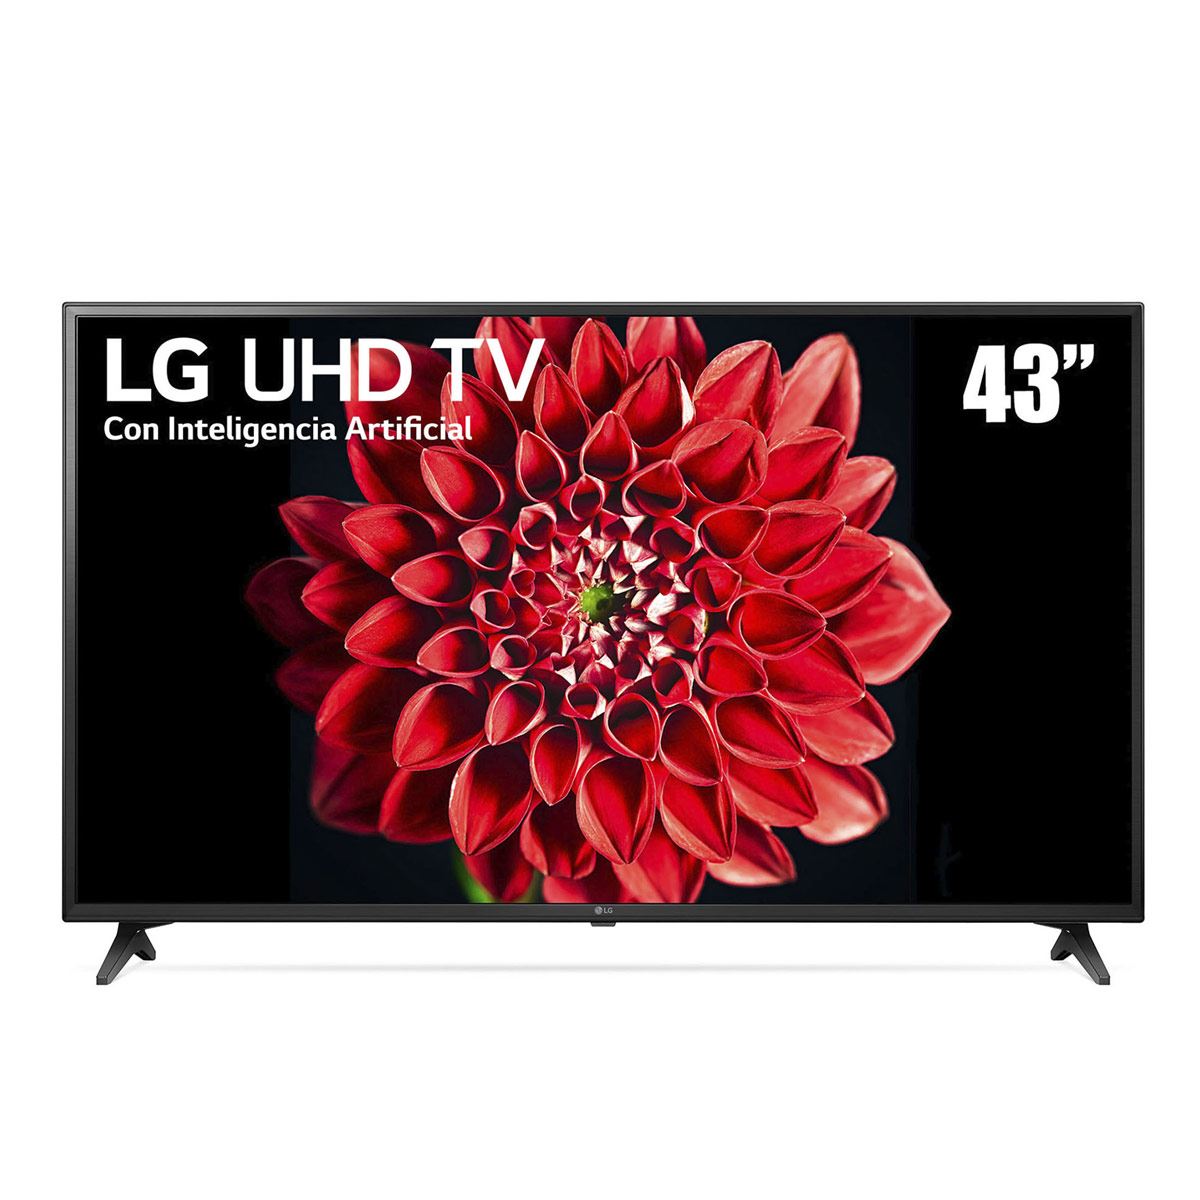 Pantalla LG UHD TV AI ThinQ 4K 43" 43UN7100PUA